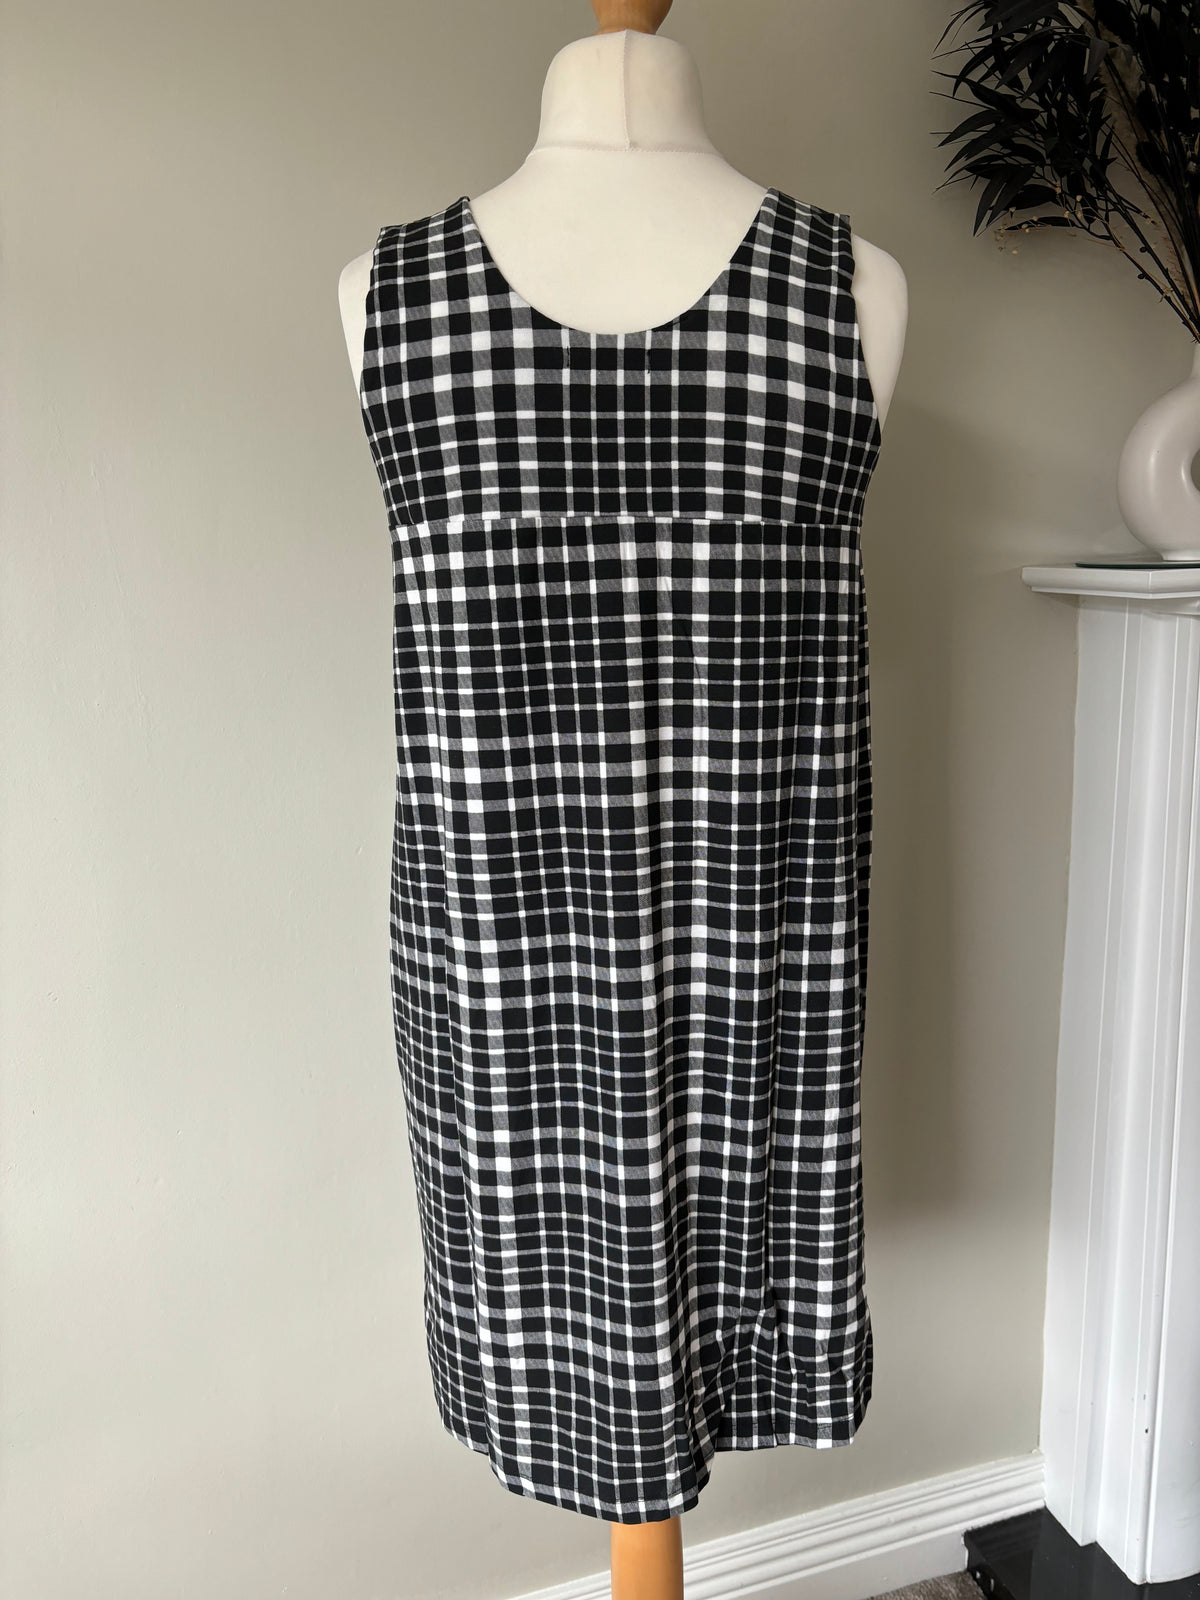 Pocket Jersey Dress by bonprix Size 14